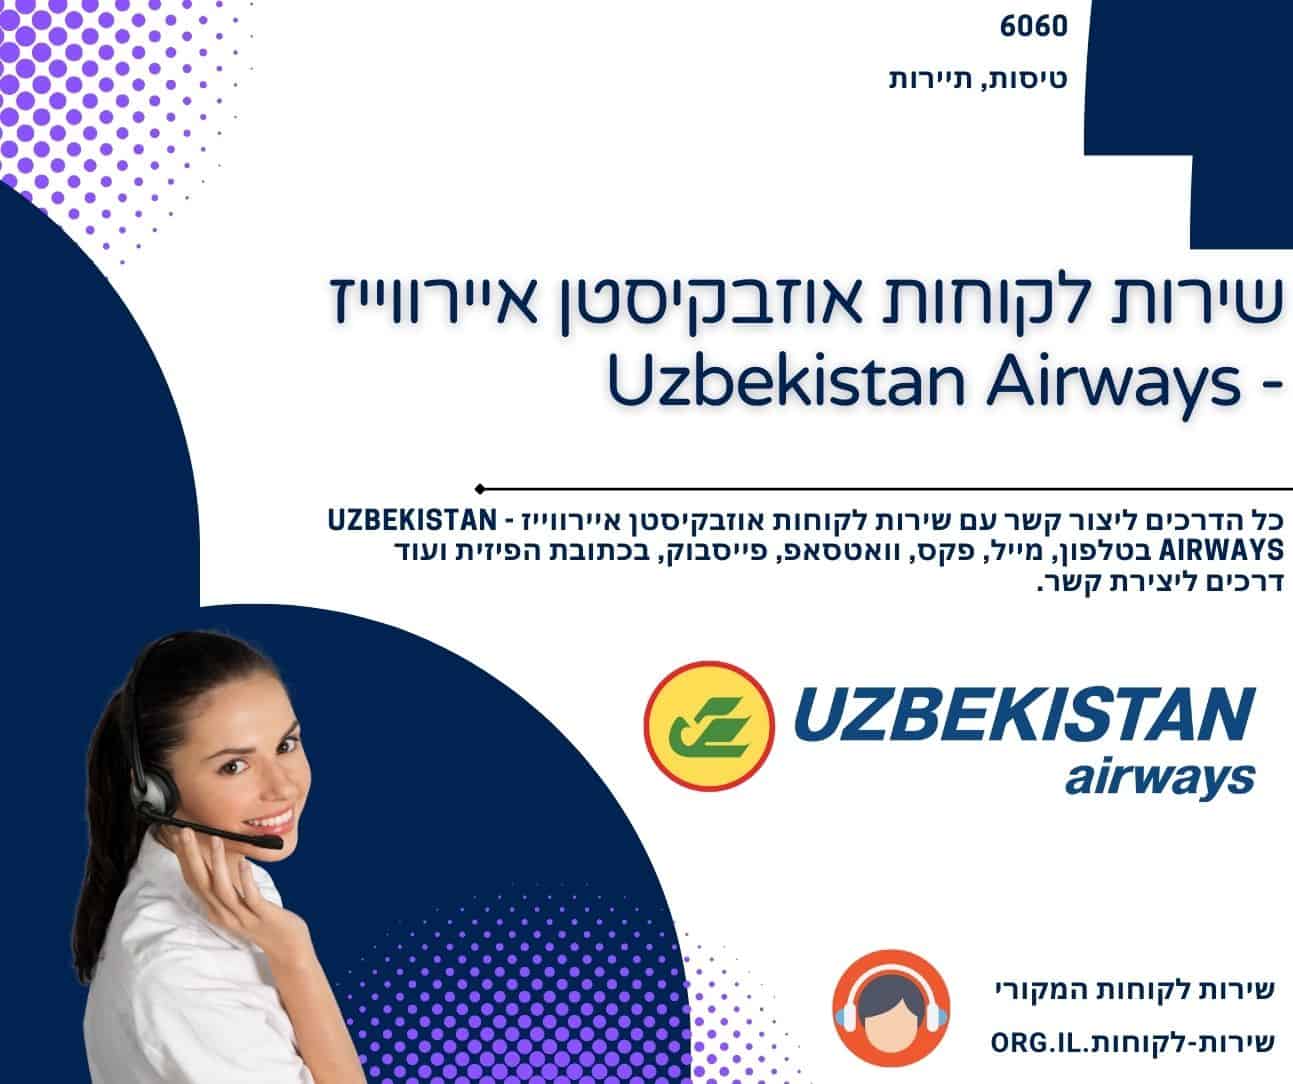 שירות לקוחות אוזבקיסטן איירווייז - Uzbekistan Airways